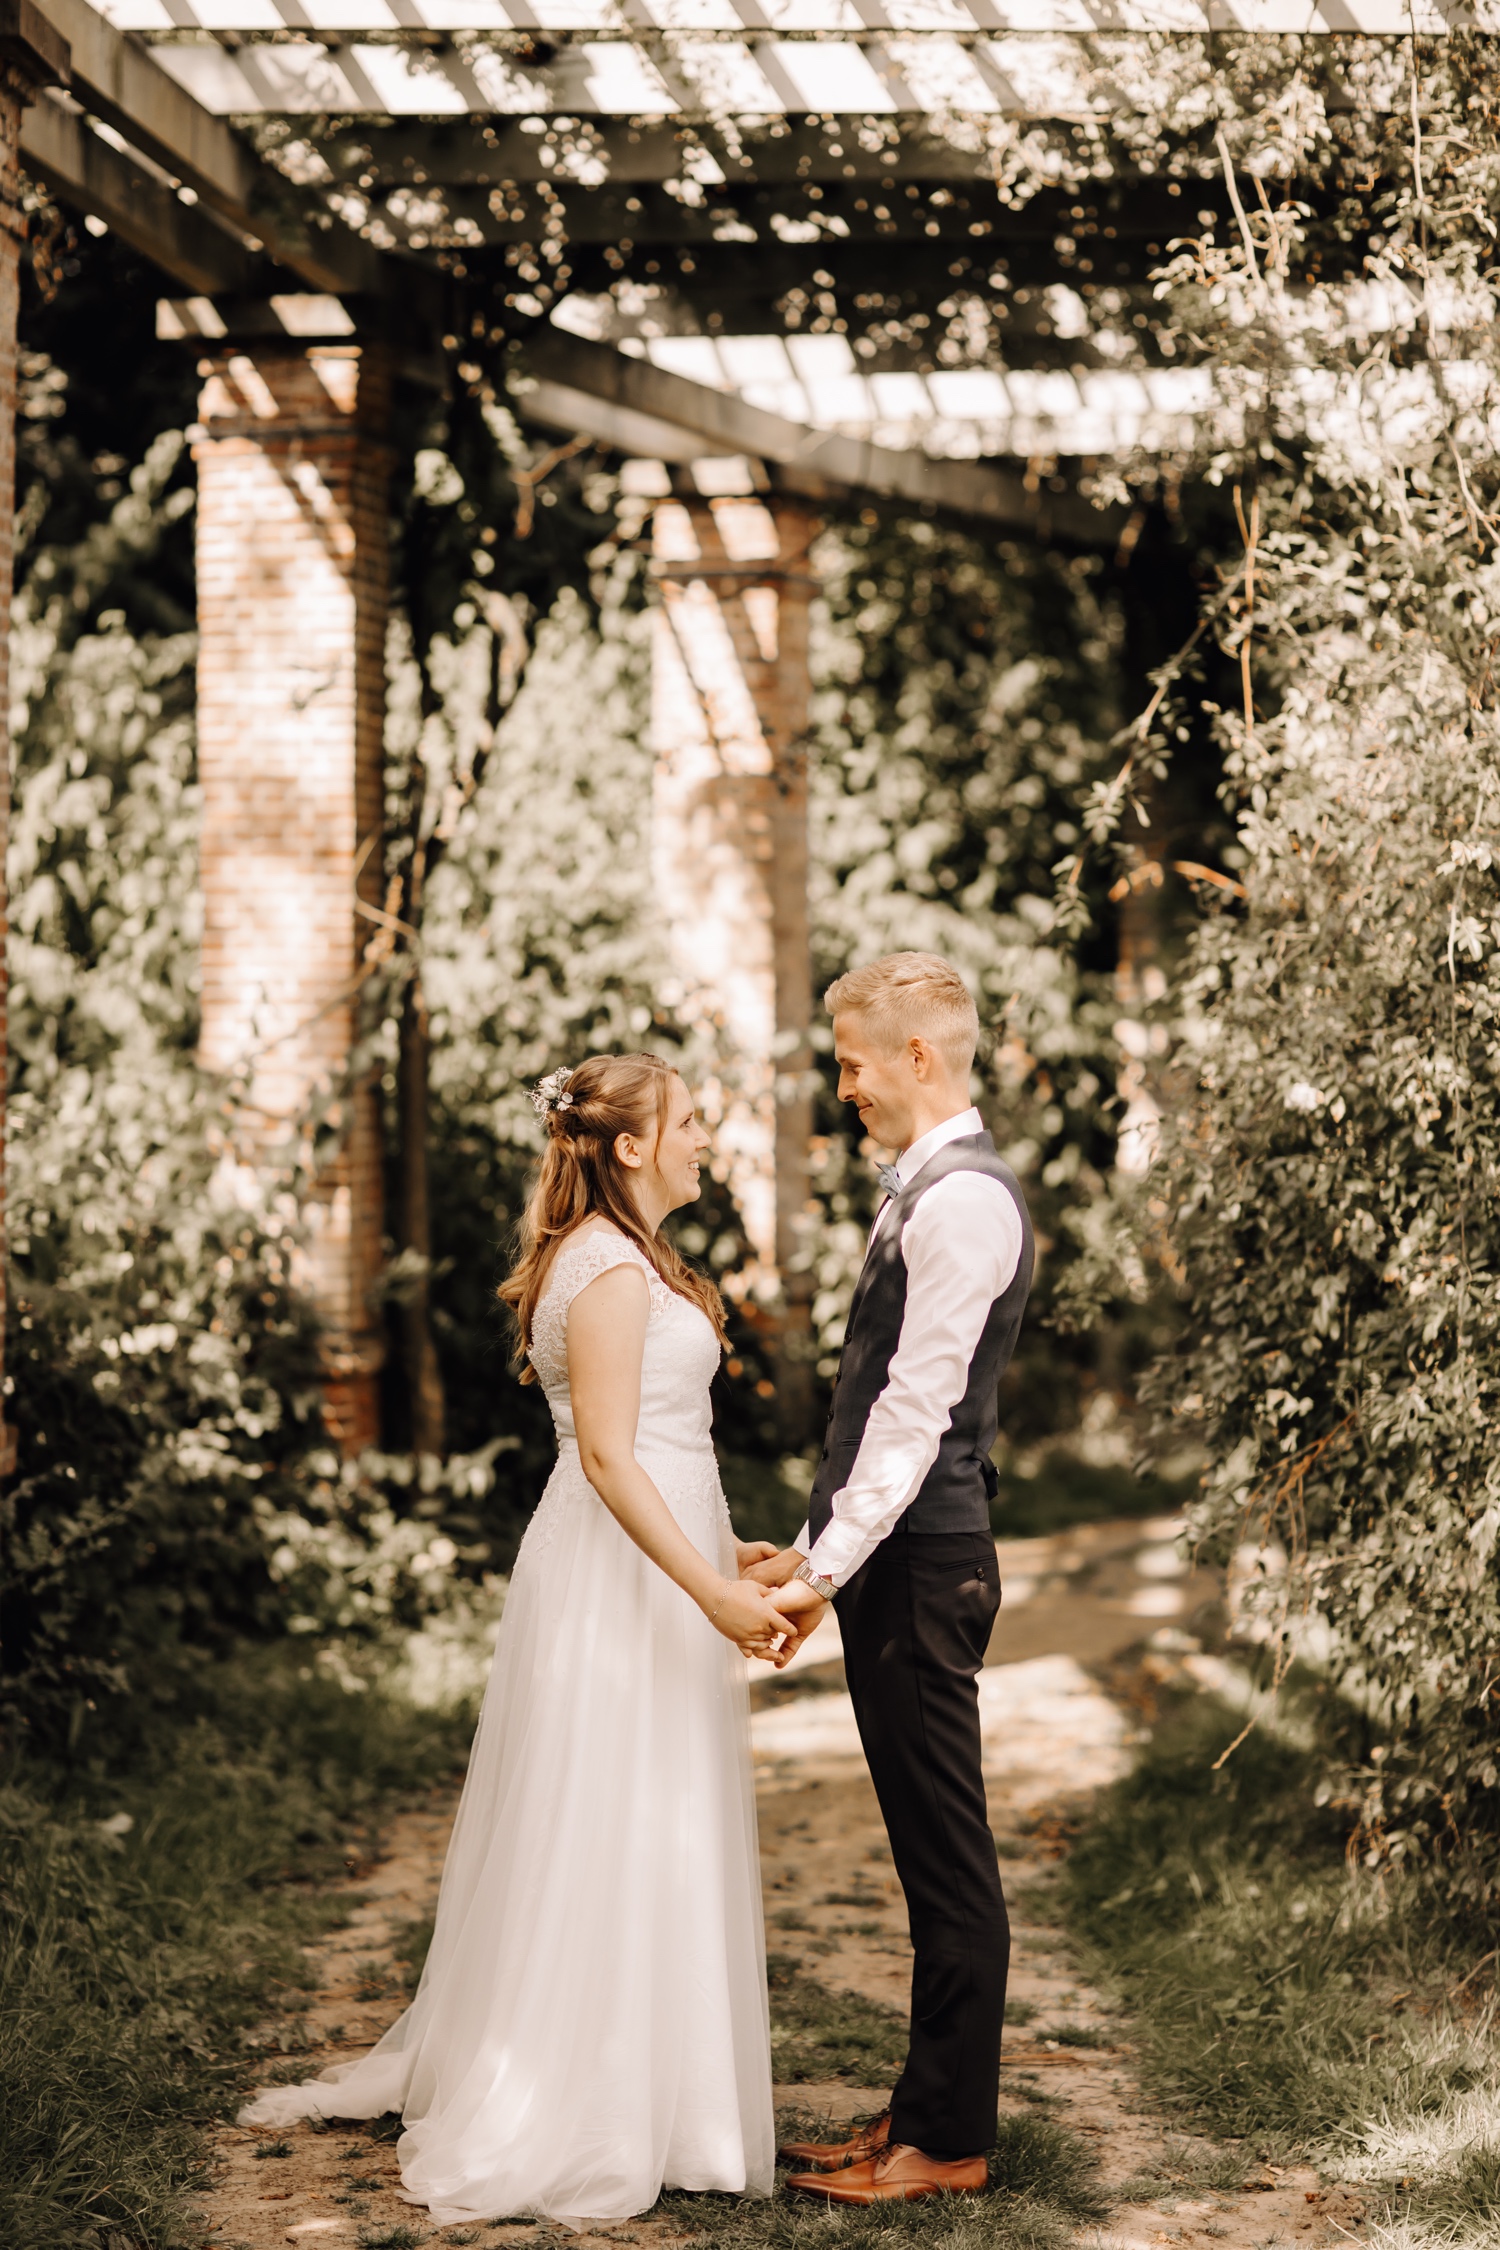 Bruid en bruidegom kijken naar elkaar tijdens fotoshoot in park van beervelde